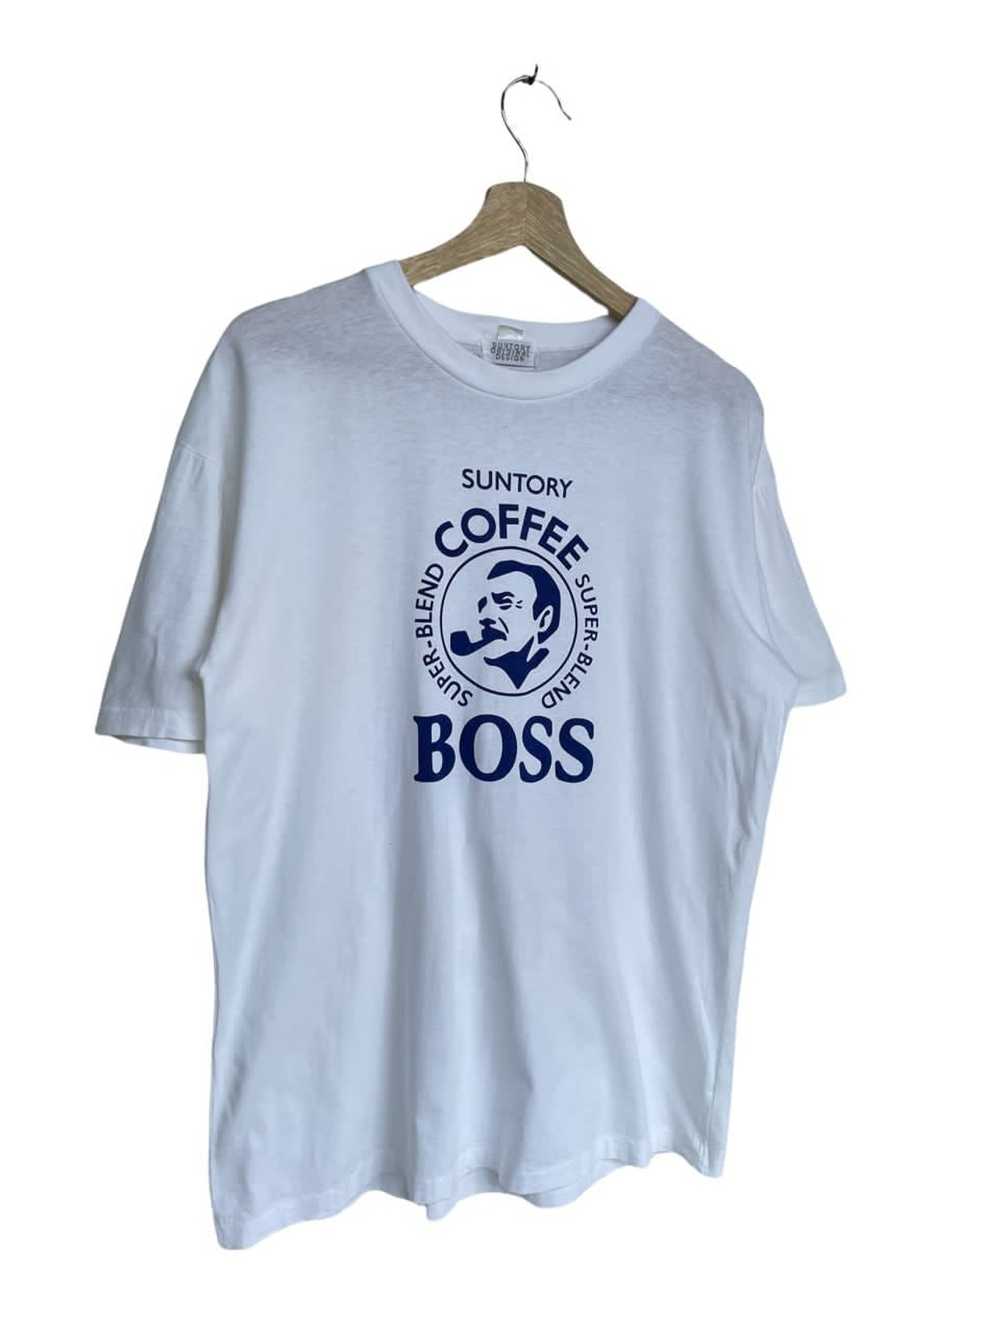 Brand × Very Rare Very Rare Suntory Boss Coffee S… - image 3